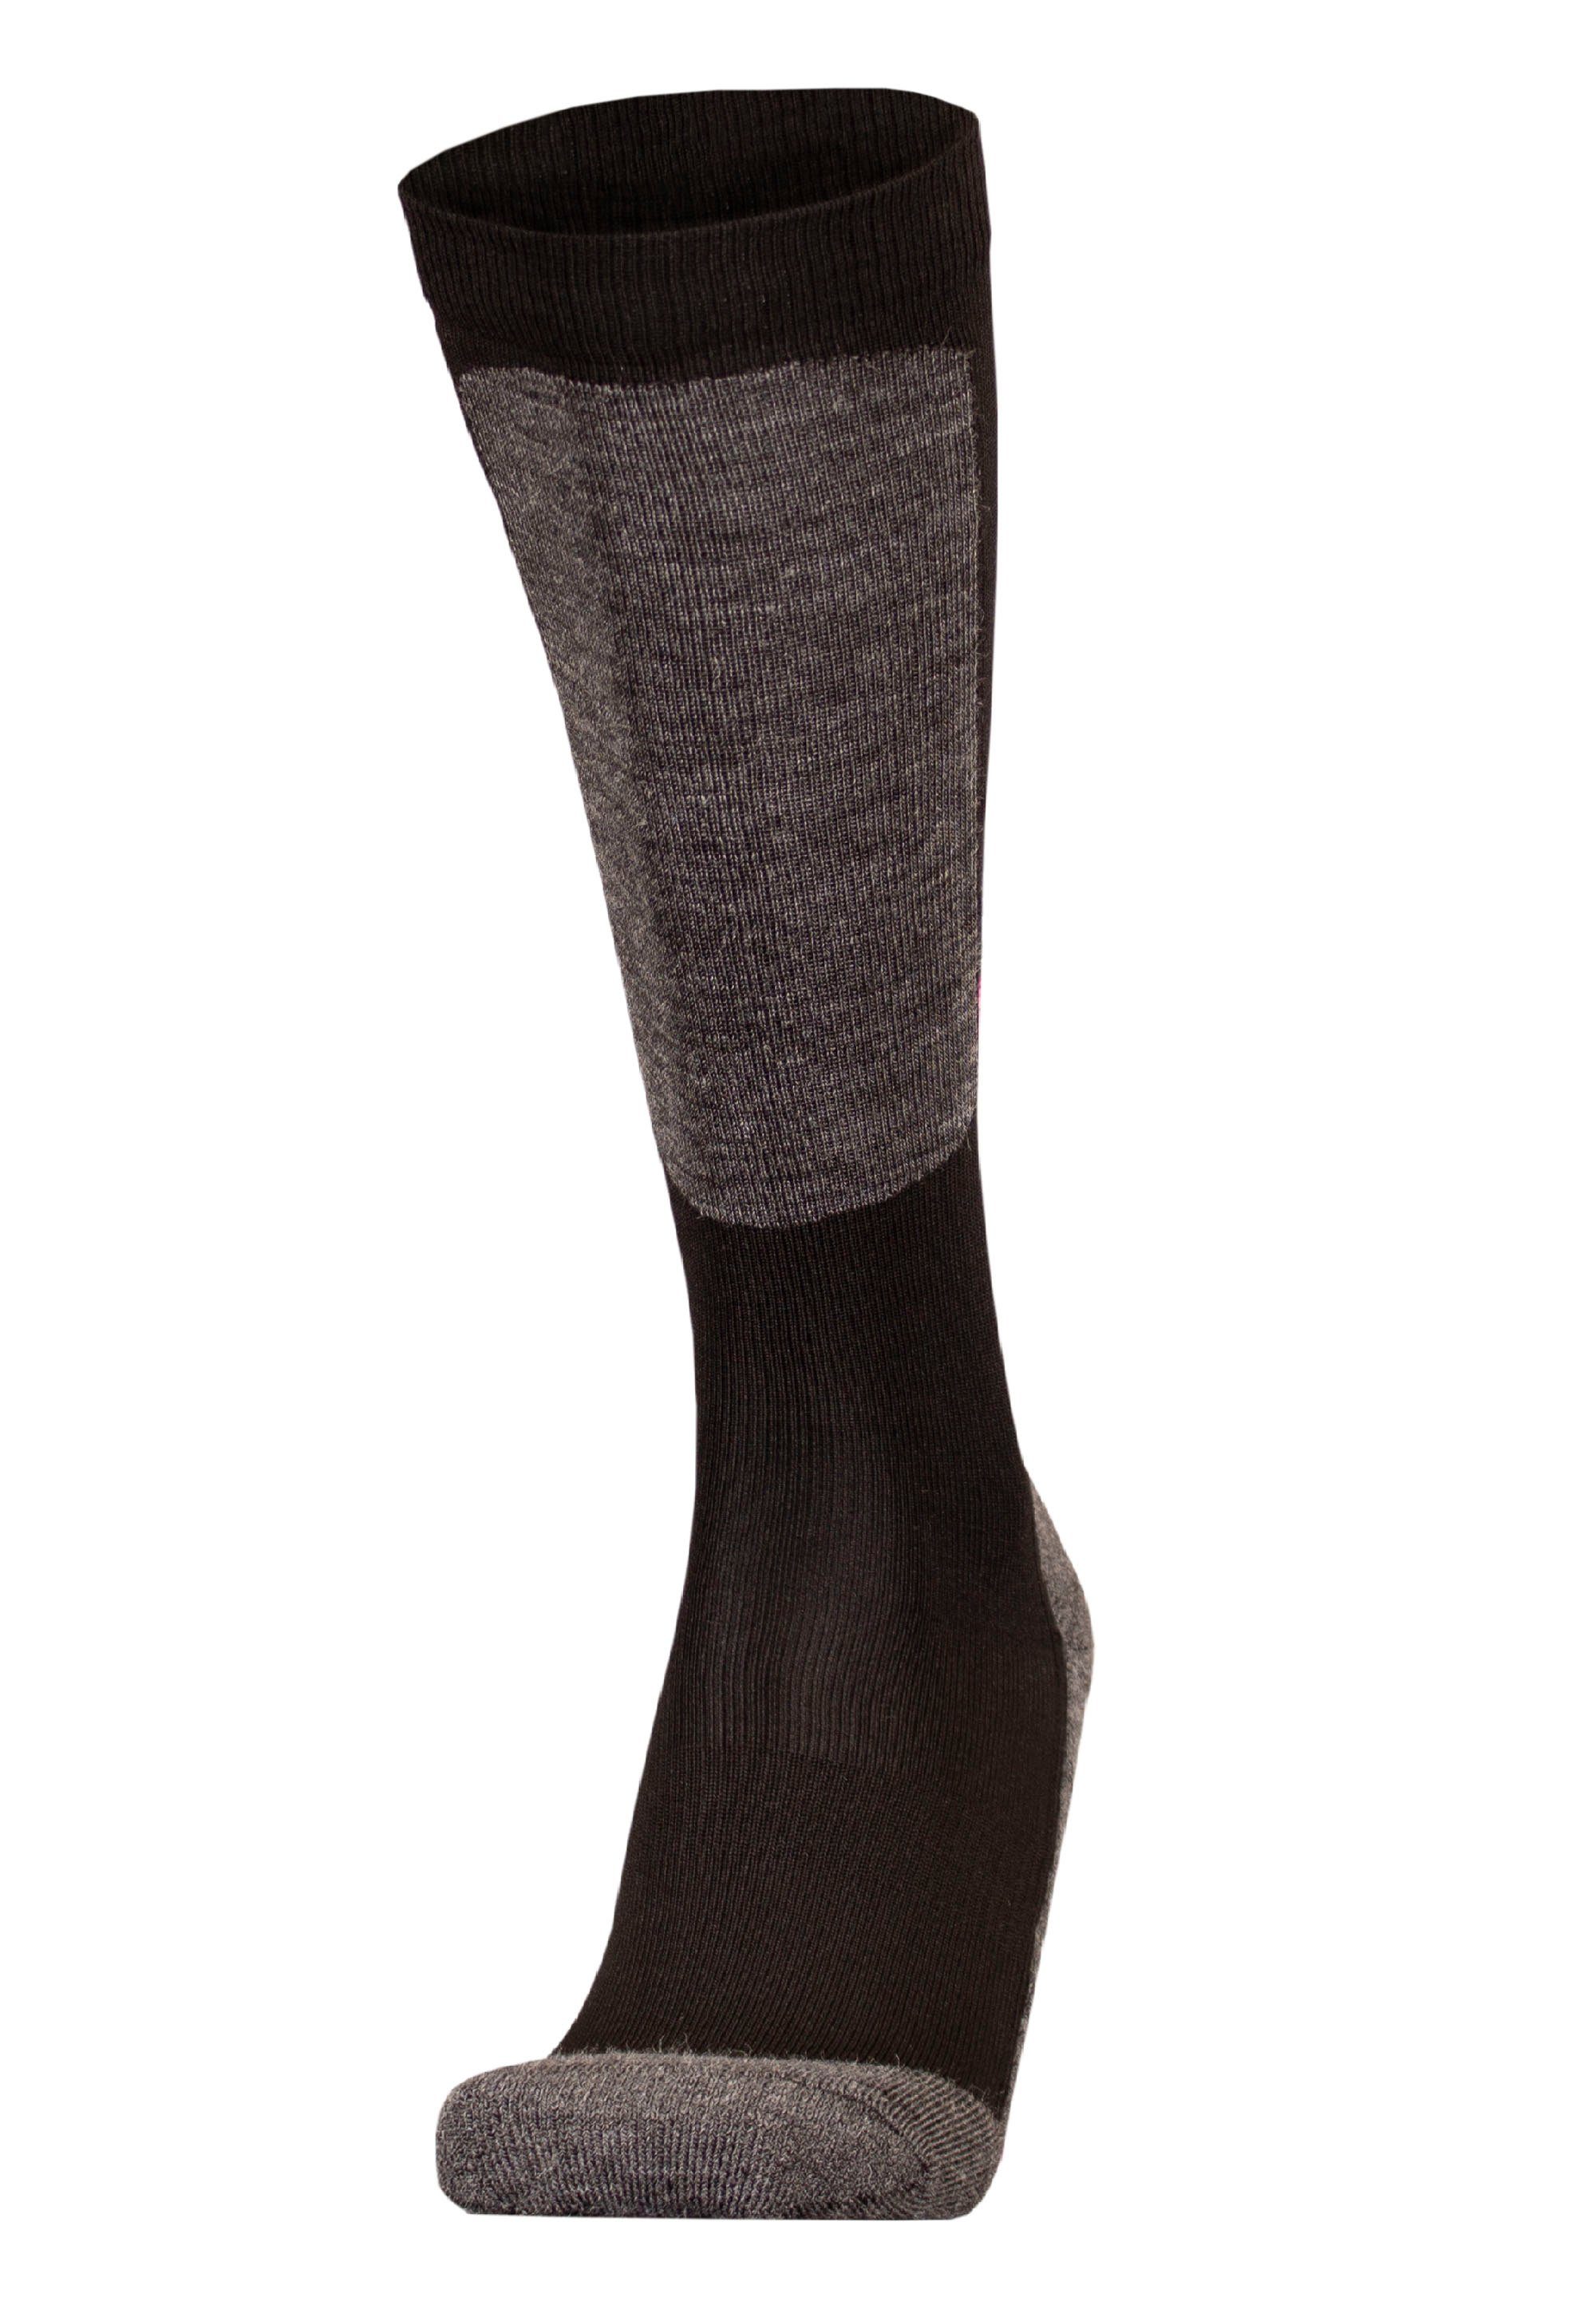 UphillSport Socken HALLA atmungsaktiver Funktion (1-Paar) schwarz-pink mit